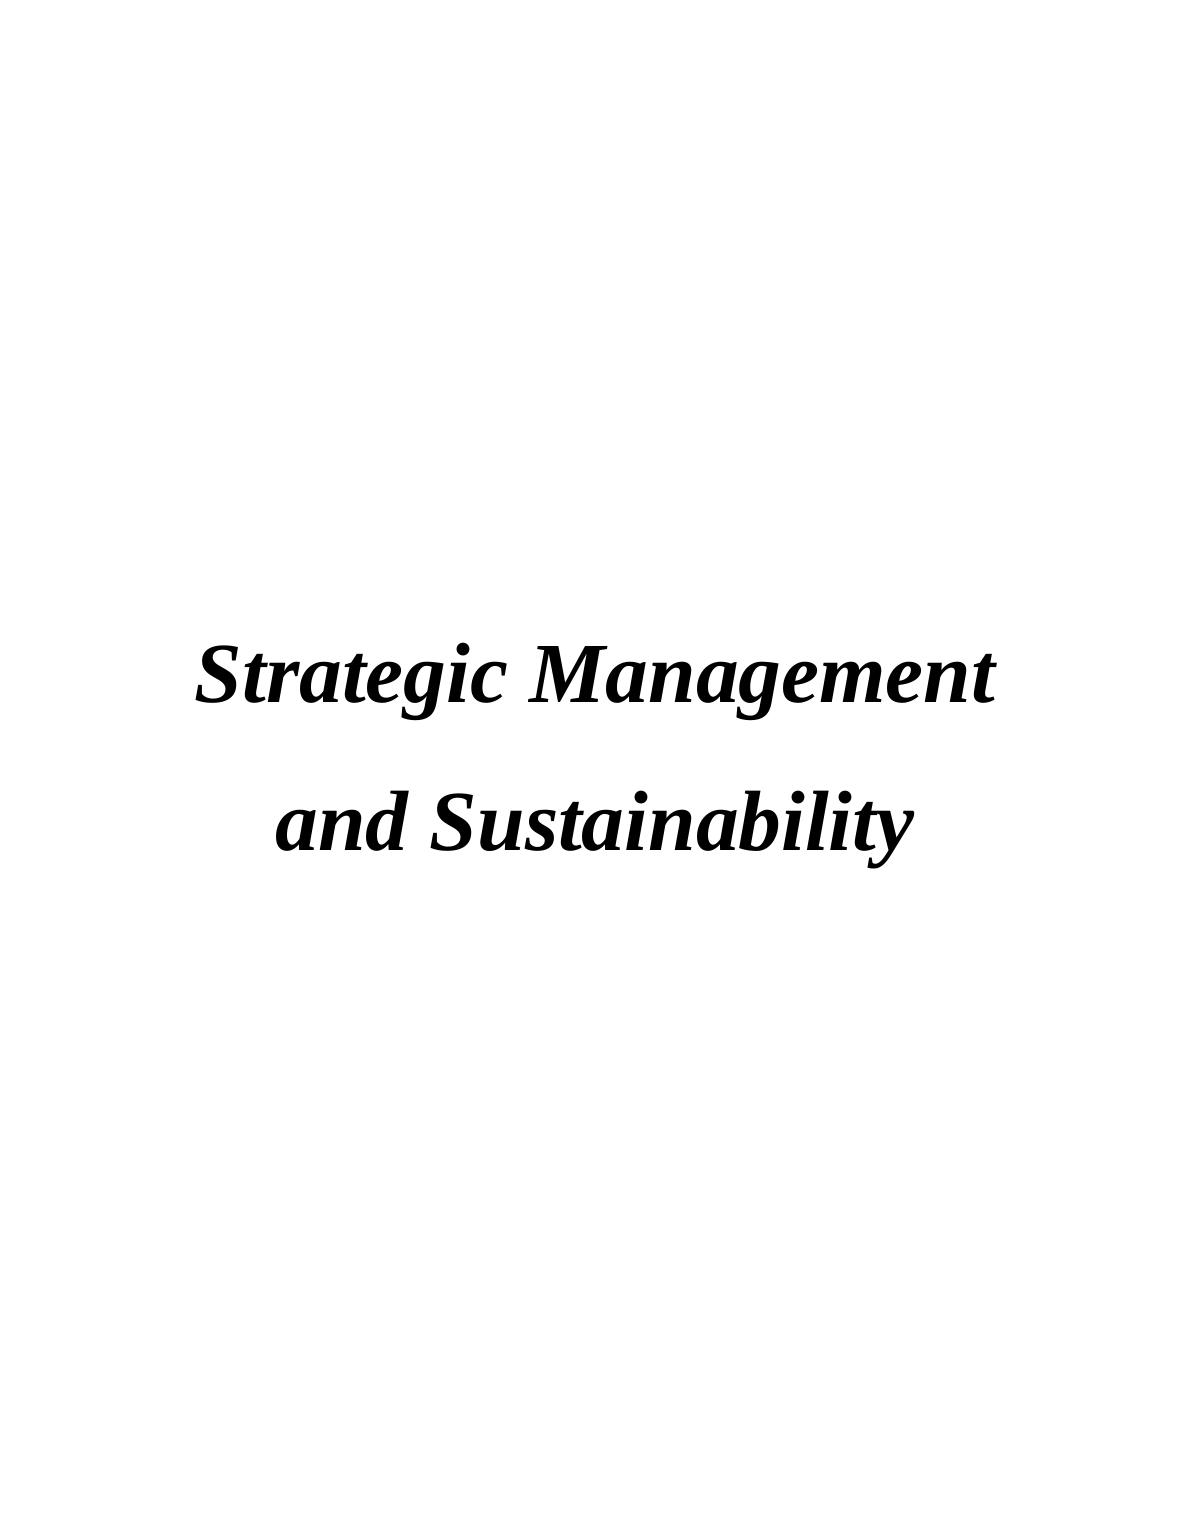 Strategic Management and Sustainability_1